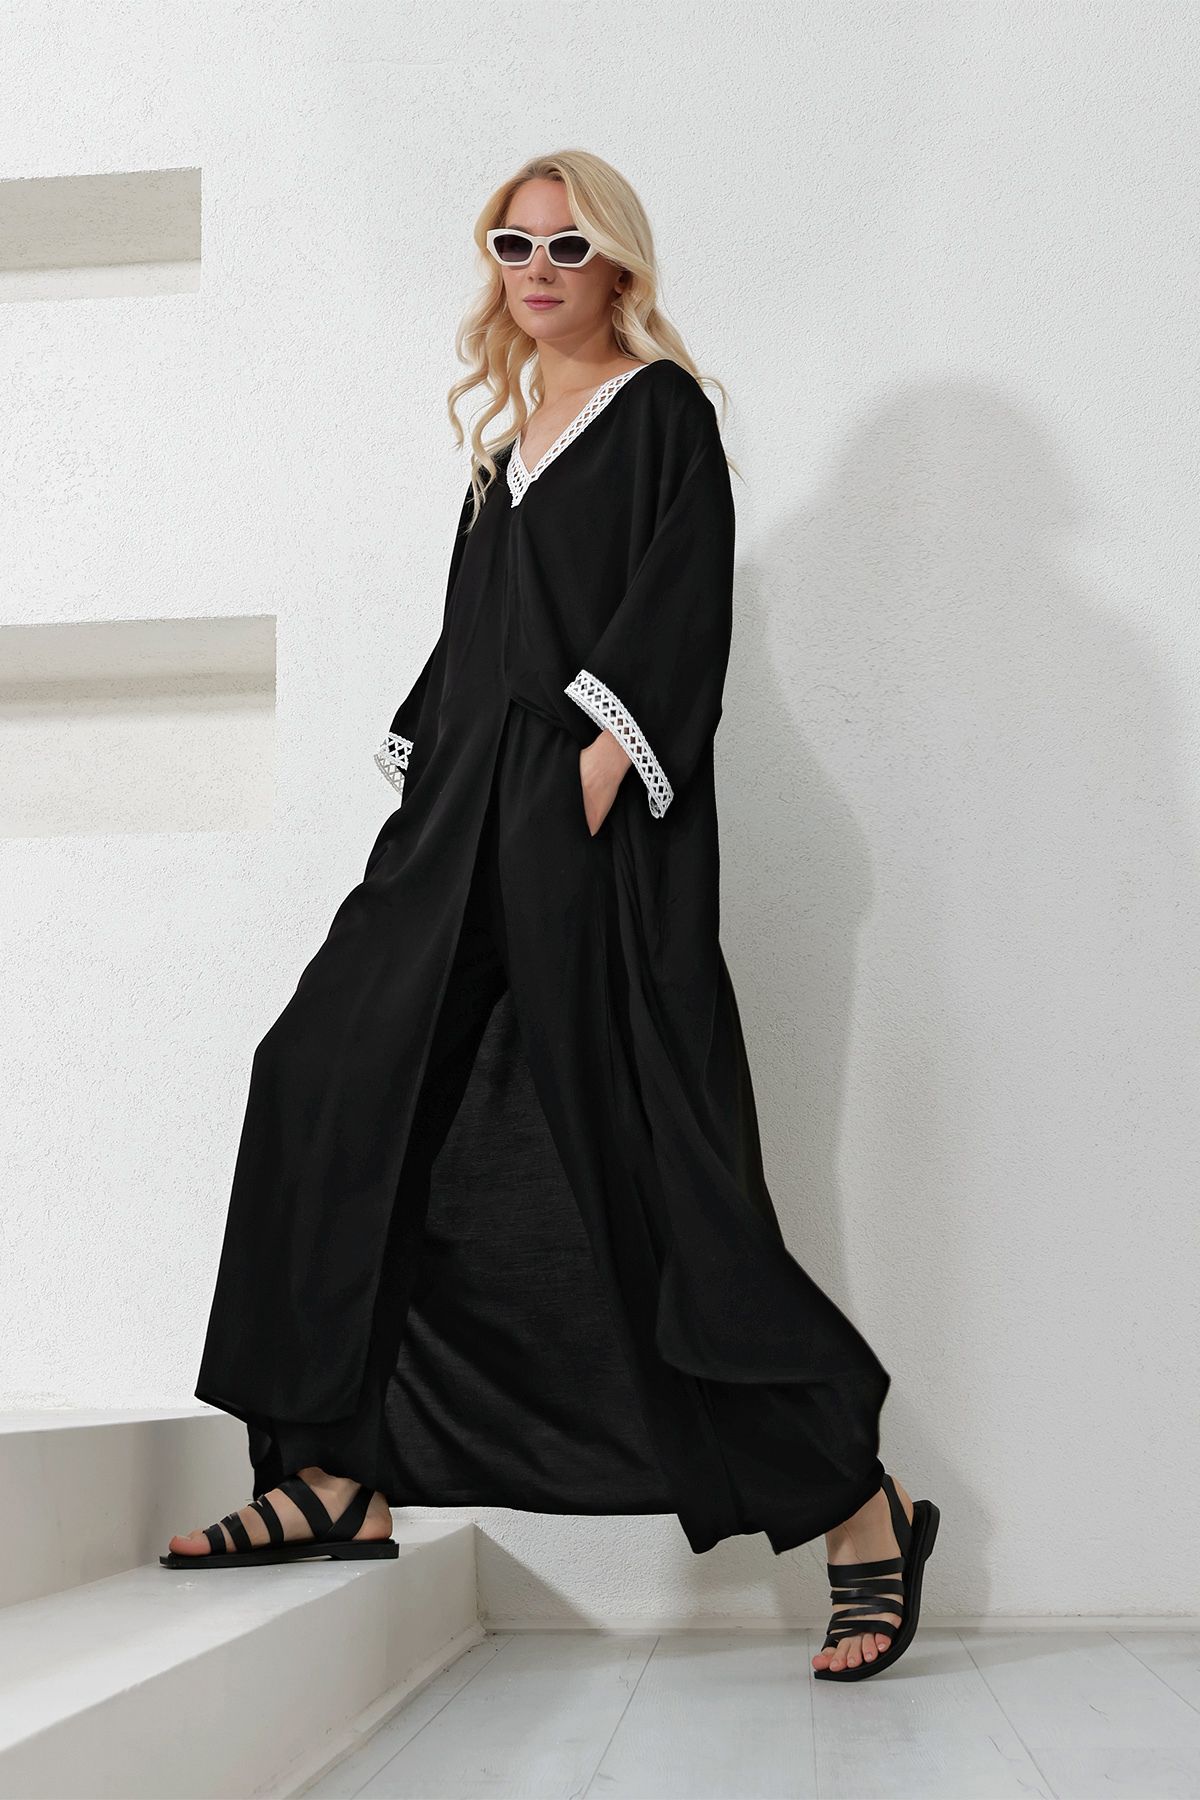 Trend Alaçatı Stili Kadın Siyah Yakası Ve Kolları Güpürlü Tunik Ve Pantolon Alt Üst Takım ALC-X11913